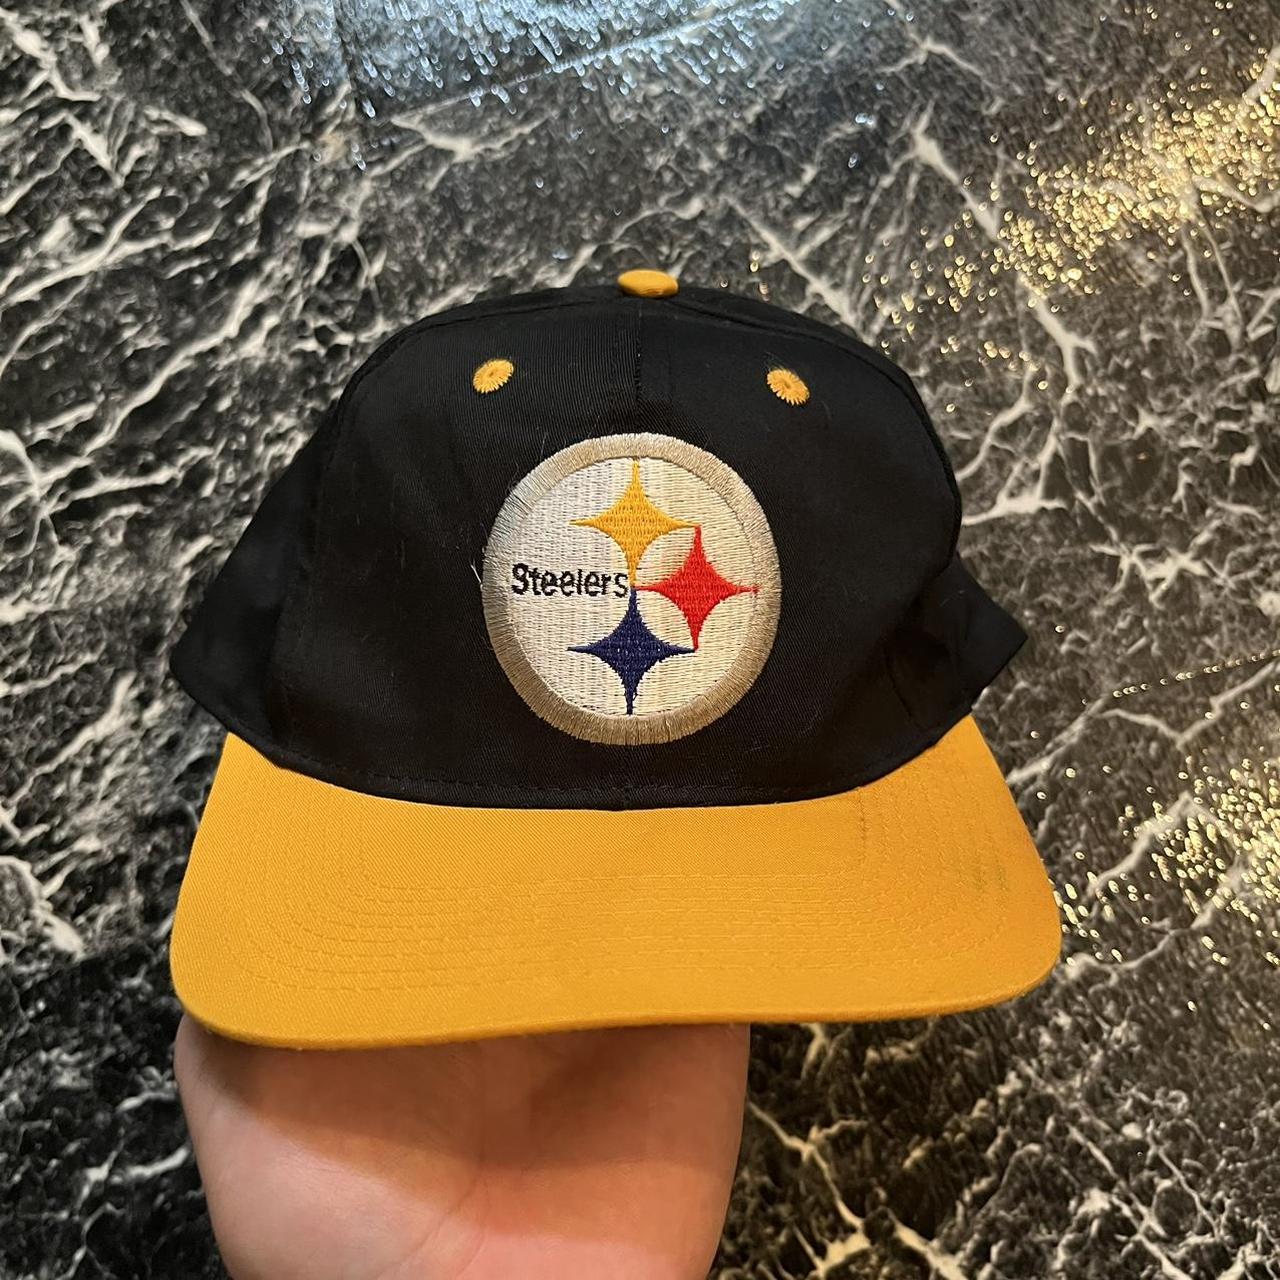 Vintage Logo 7 Pittsburgh Steelers Hat #vintage - Depop